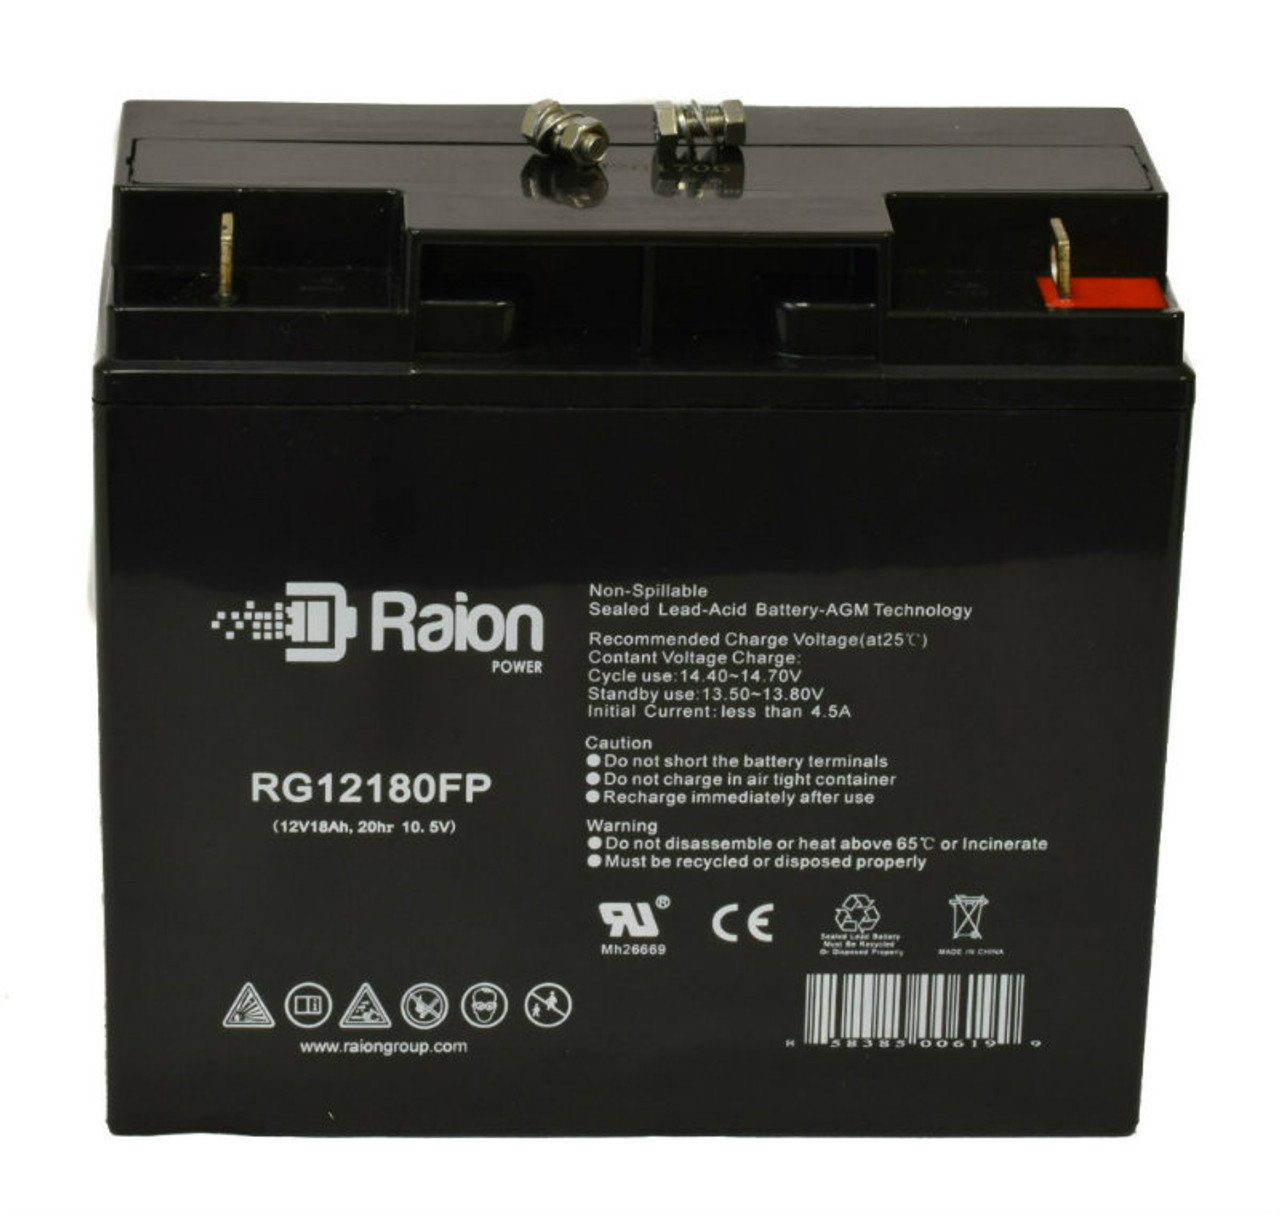 Raion Power RG12180FP 12V 18Ah Lead Acid Battery for Pustun PST17-12